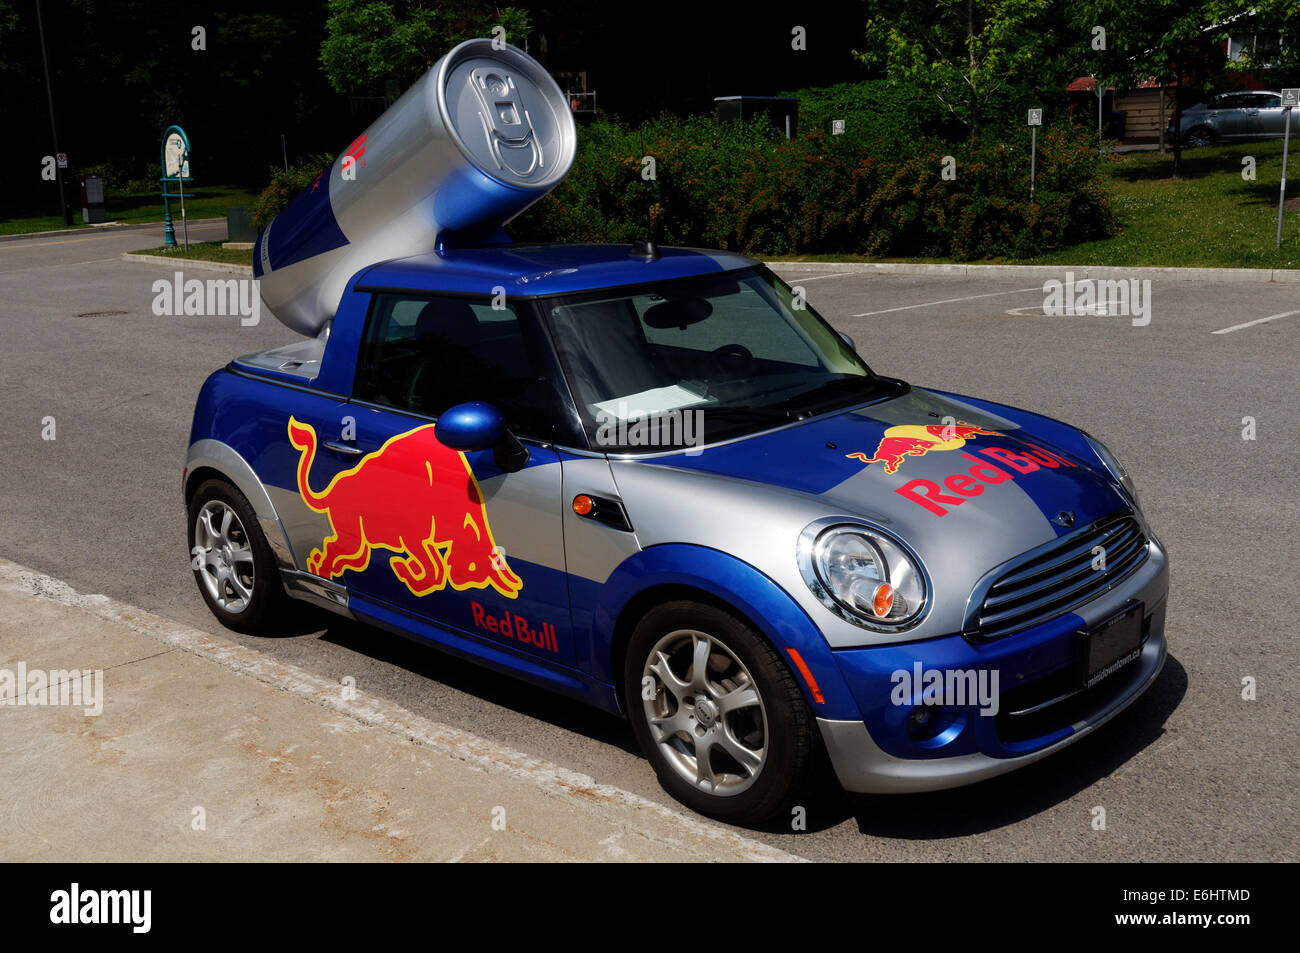 Mini Red Bull Stockfotos und -bilder Kaufen - Alamy